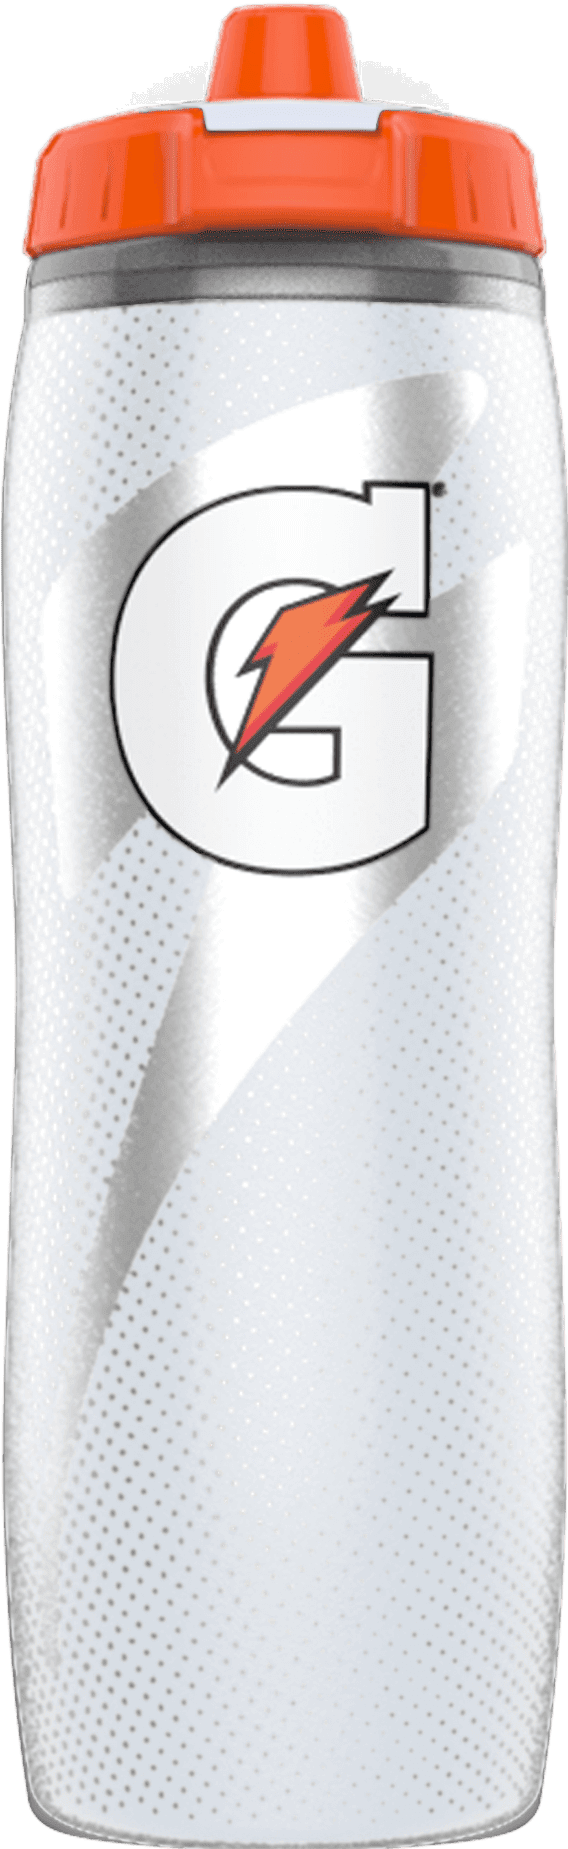 Gatorade 30oz Gx Plastic Water Bottle - White : Target